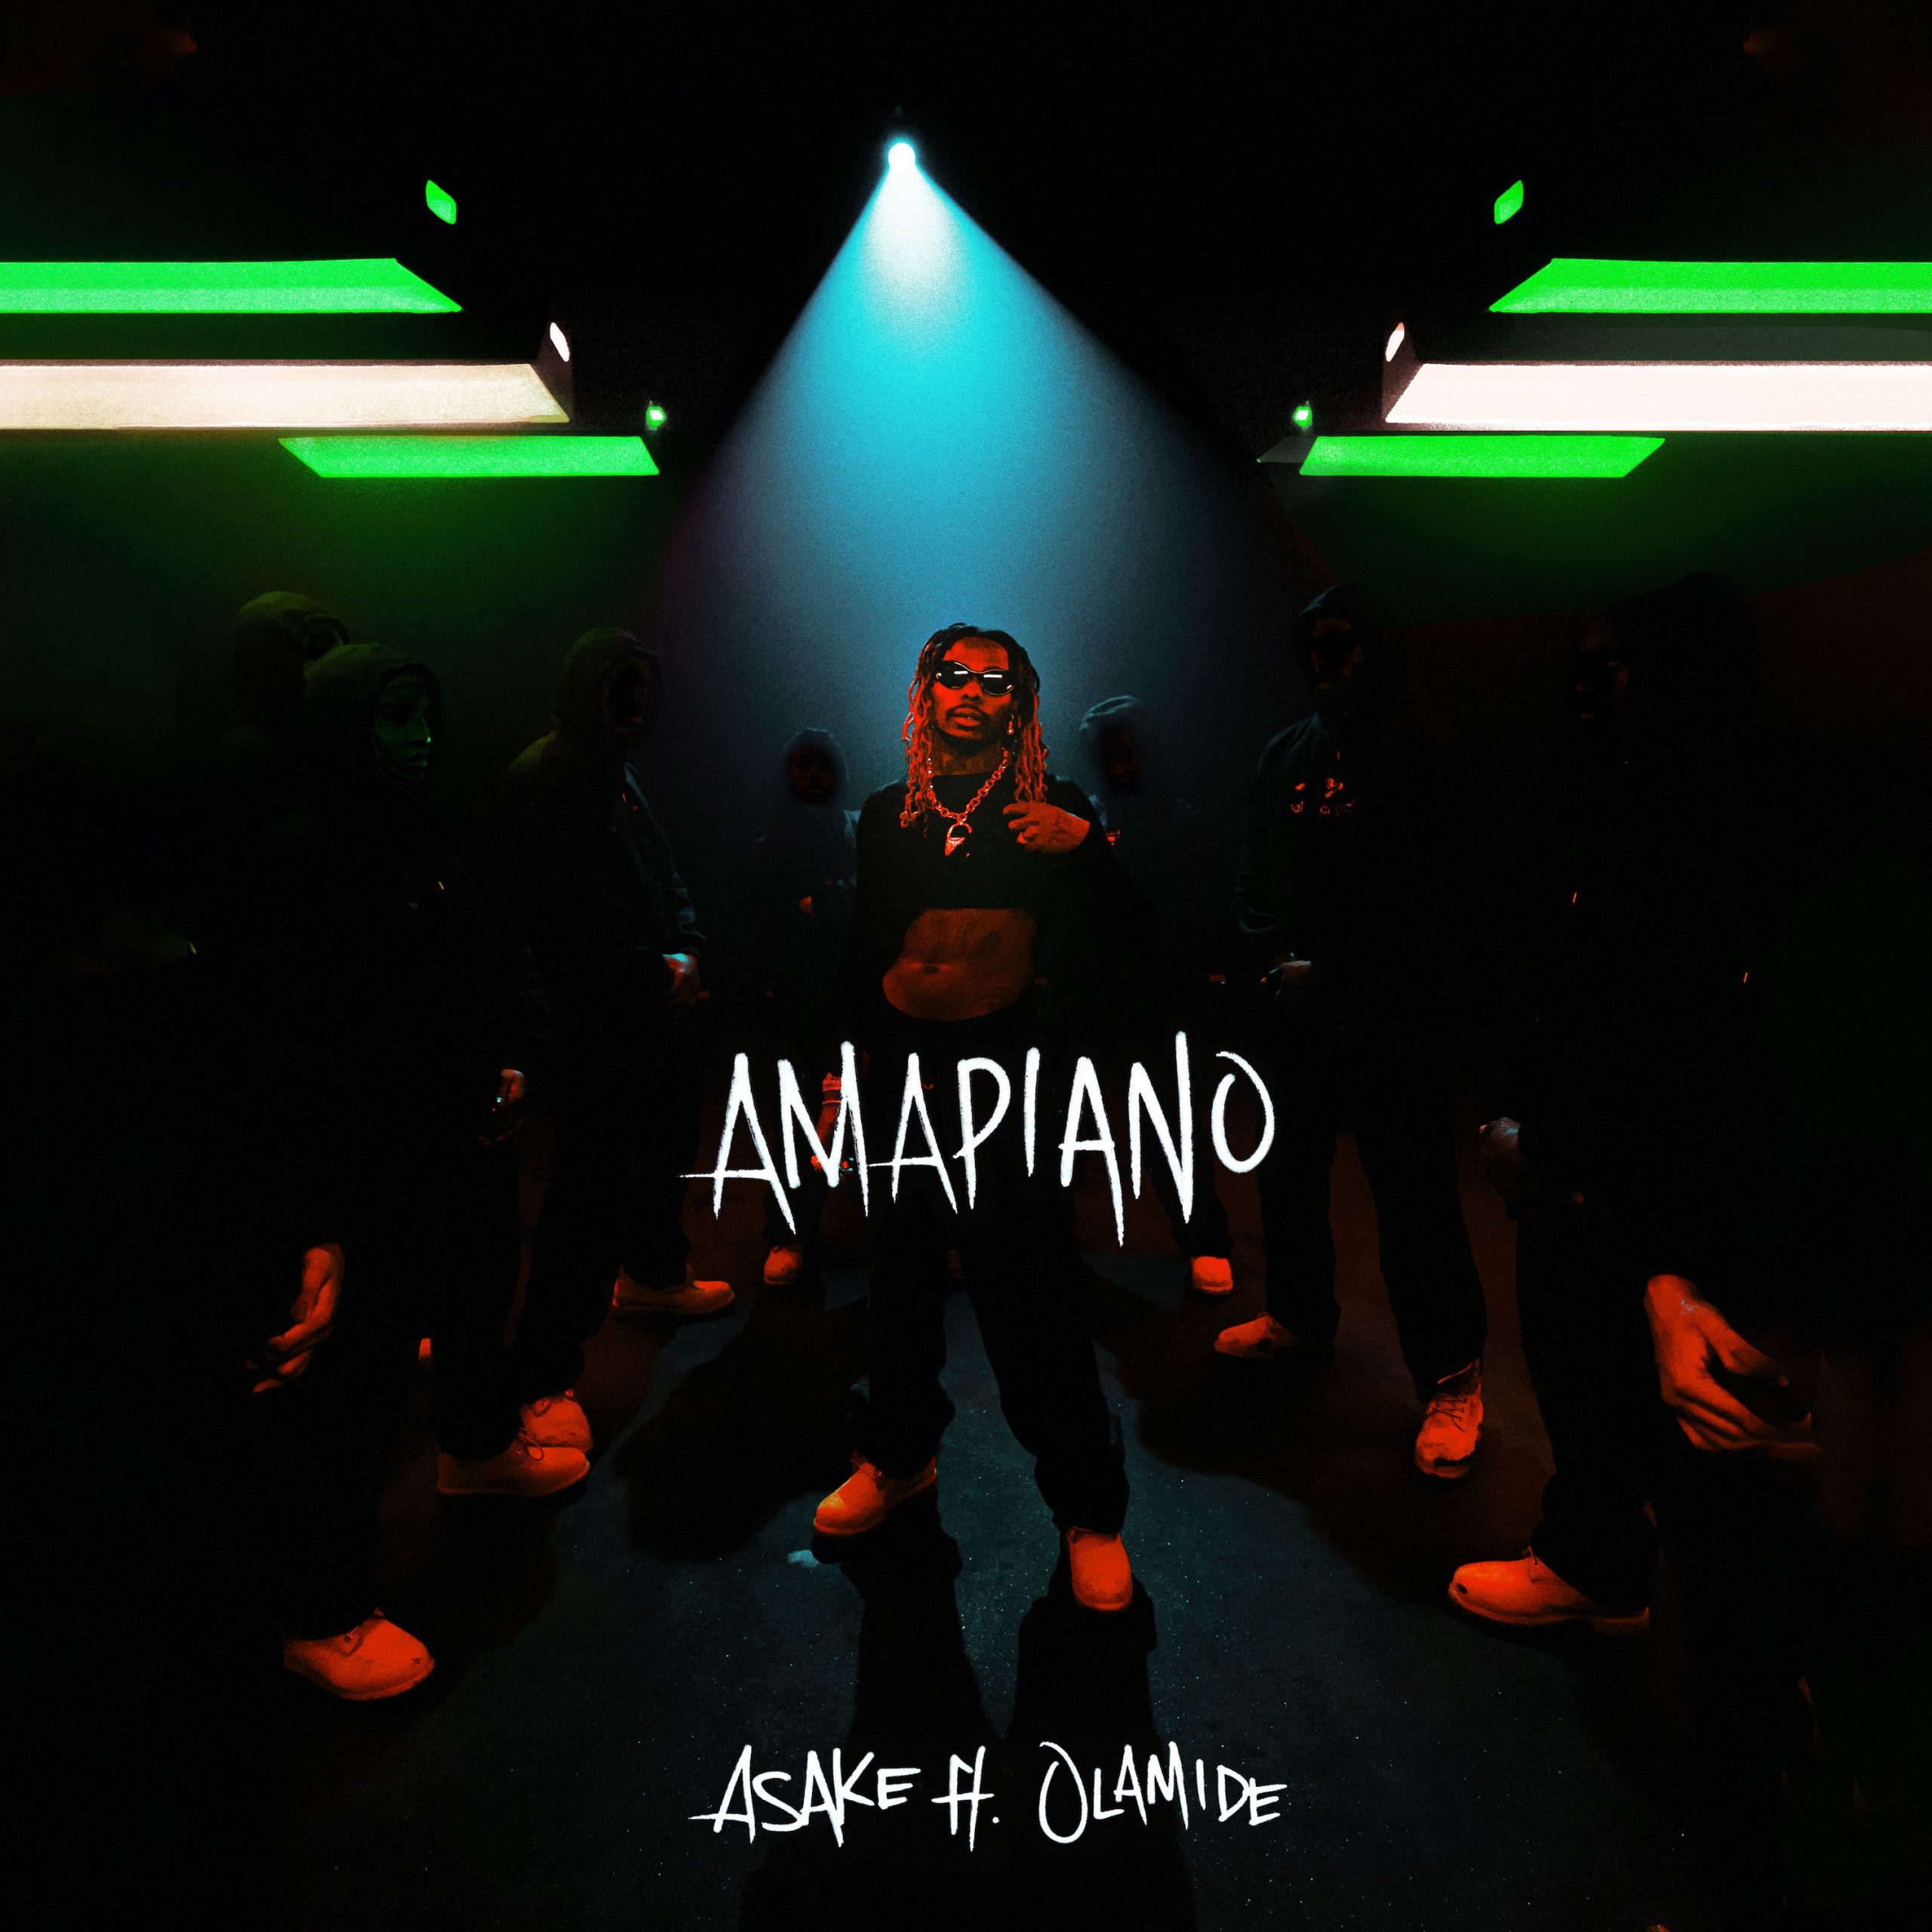 Asake Olamide — Amapiano scaled